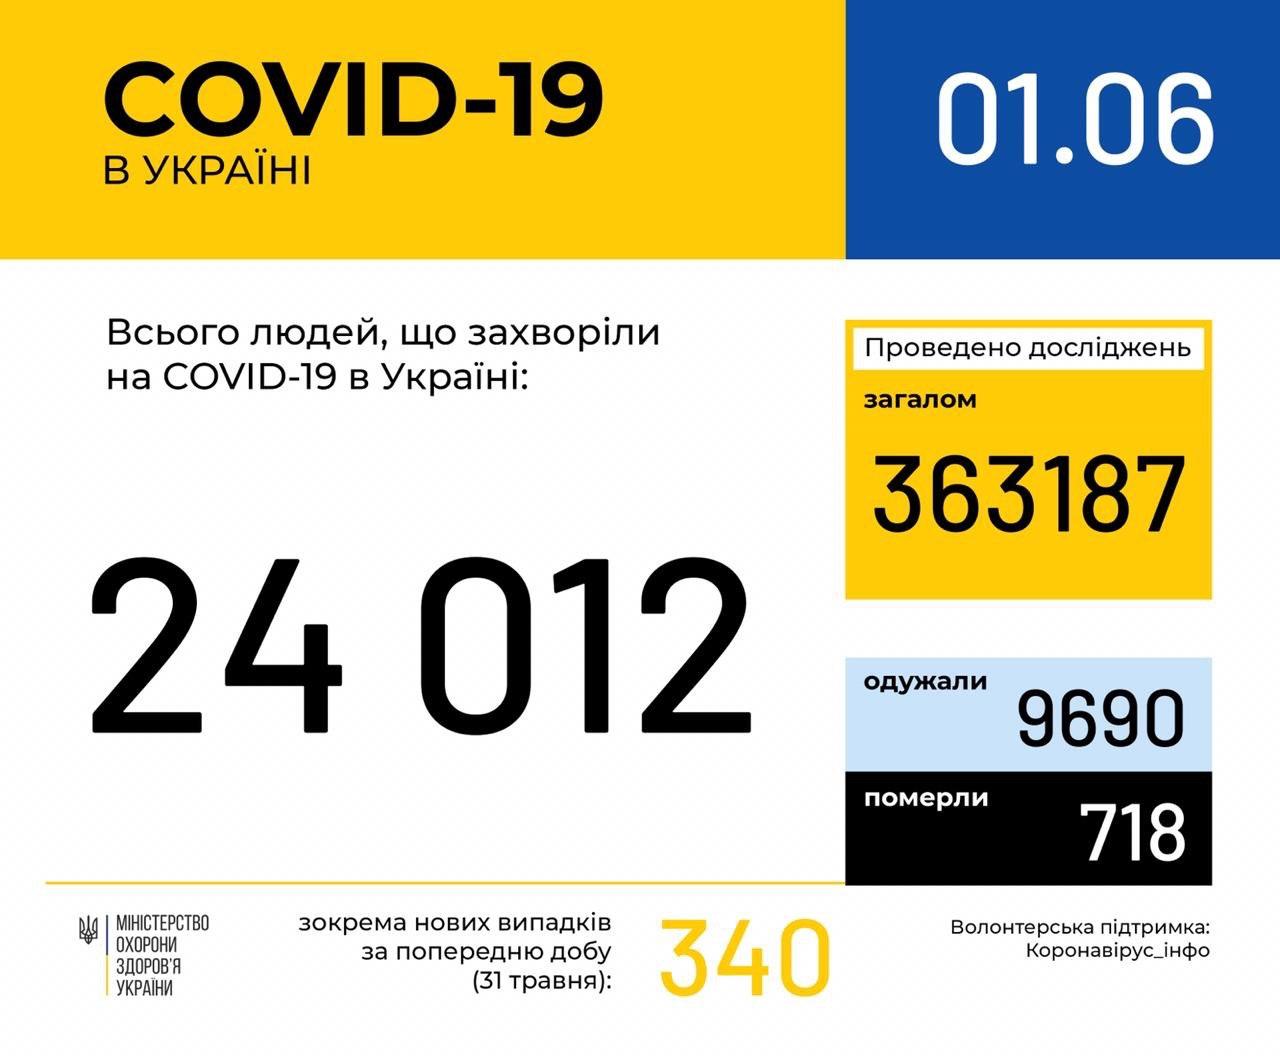 В Україні зафіксовано 24012 випадків коронавірусної хвороби COVID-19, - МОЗ